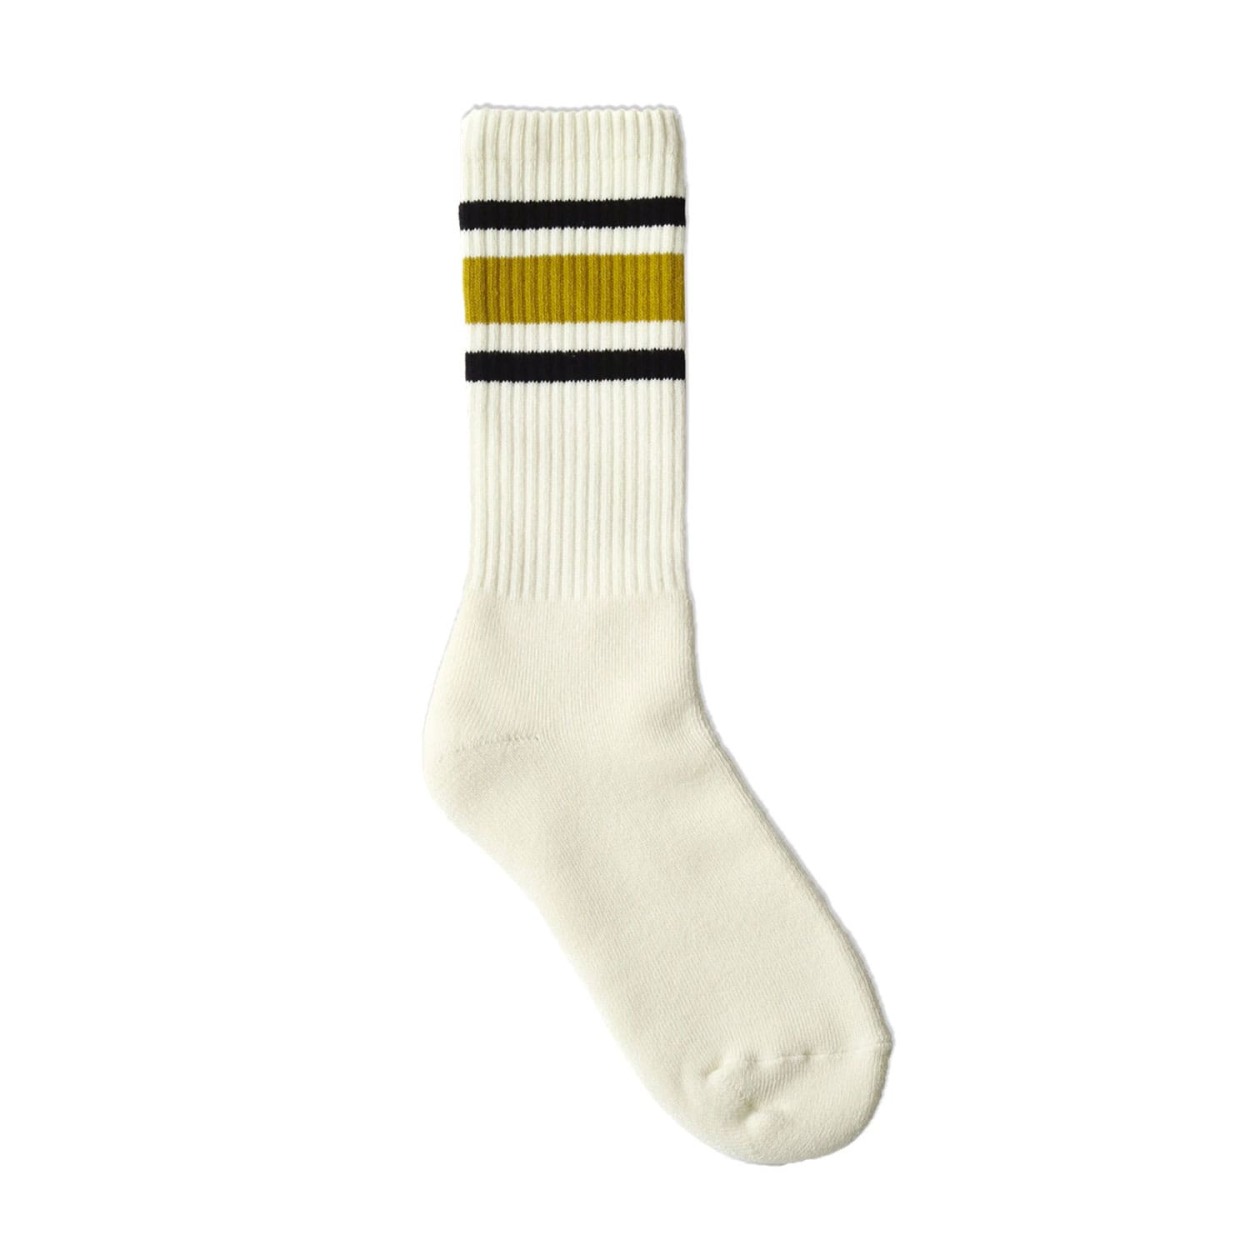 靴下 メンズ decka Quality socks 80’s スケーターソックス メンズ ソックス...